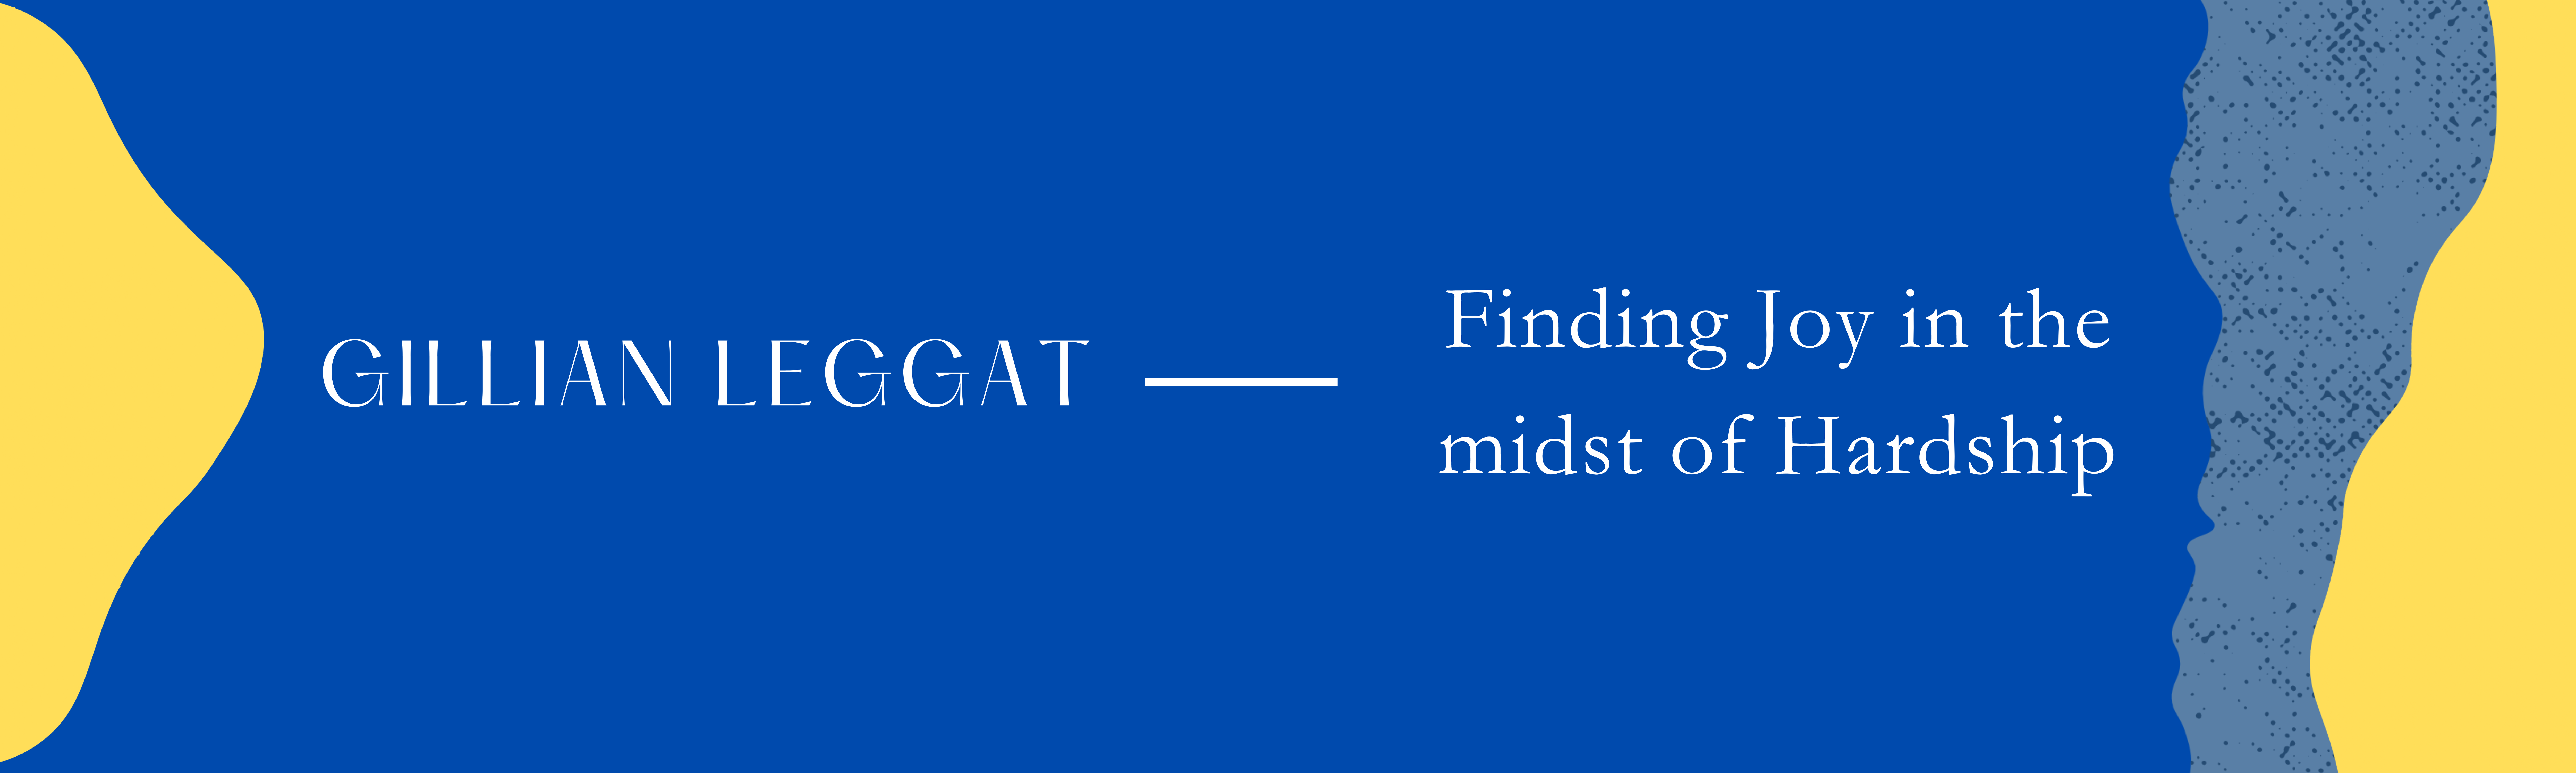 Gillian Leggat - Finding Joy in the midst of hardship